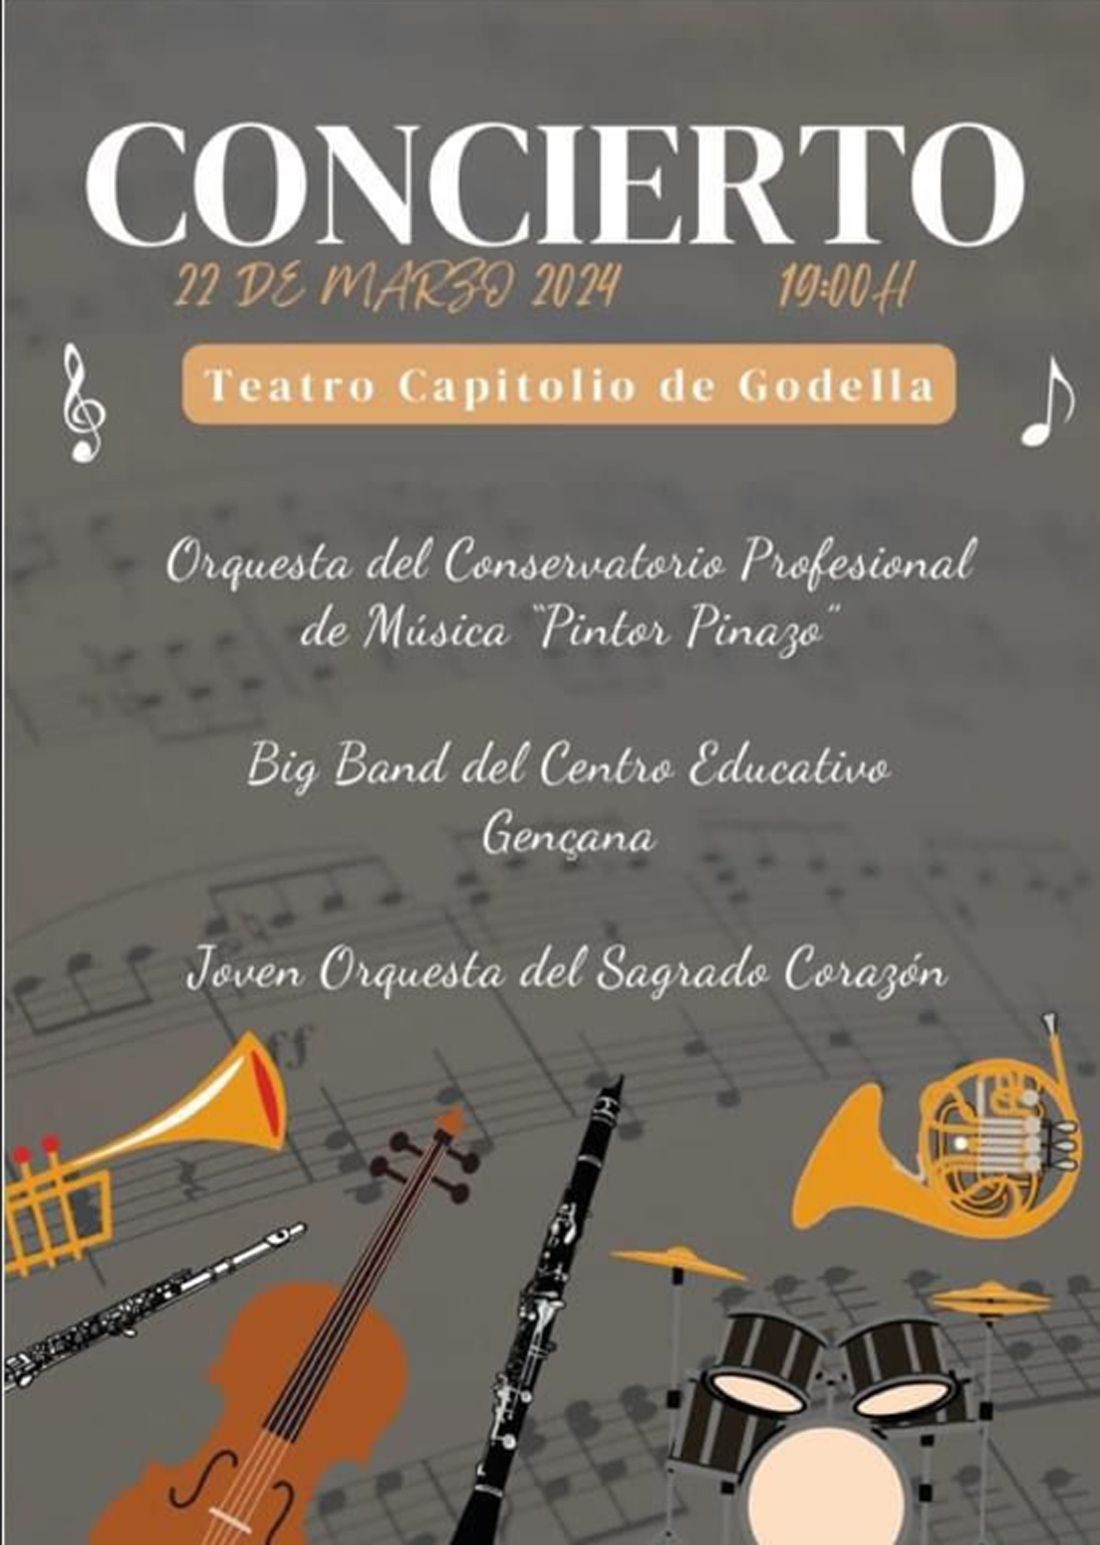 Cartel anunciador del concierto del viernes 22 de marzo a partir de las 19.00 horas en el Teatro Capitolio de Godella, en el que actuarán la Orquesta del Conservatorio Profesional de Música "Pintor Pinazo", la joven Orquesta del Sagrado Corazón y la Gençana Big Band